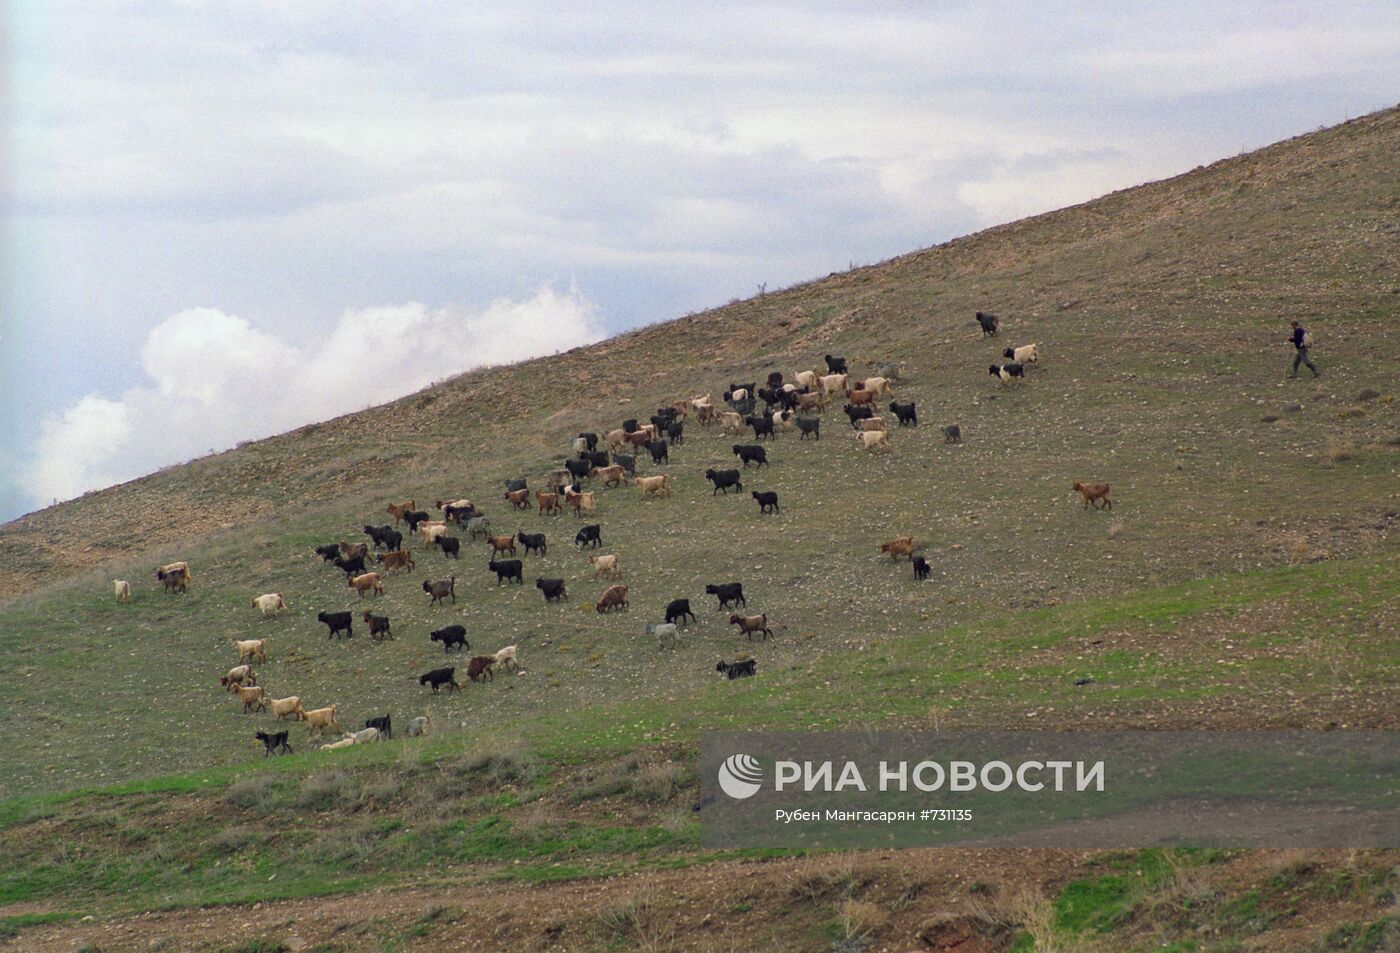 Сюникская область на юге Армении